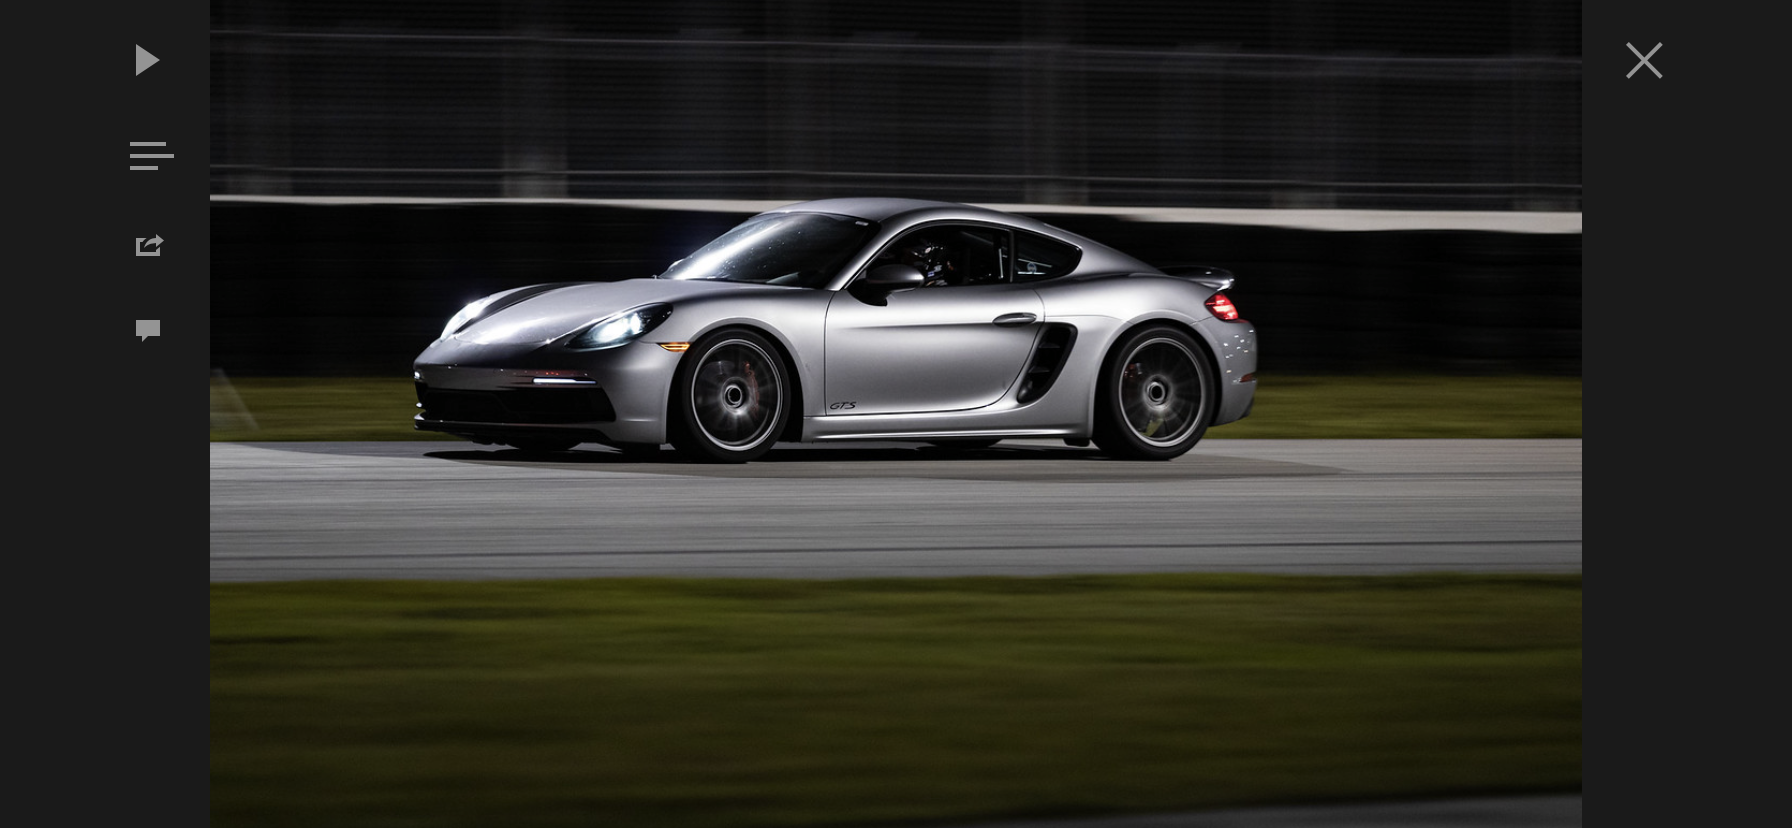 Modified 718s - Post your pics! - Rennlist - Porsche Discussion Forums